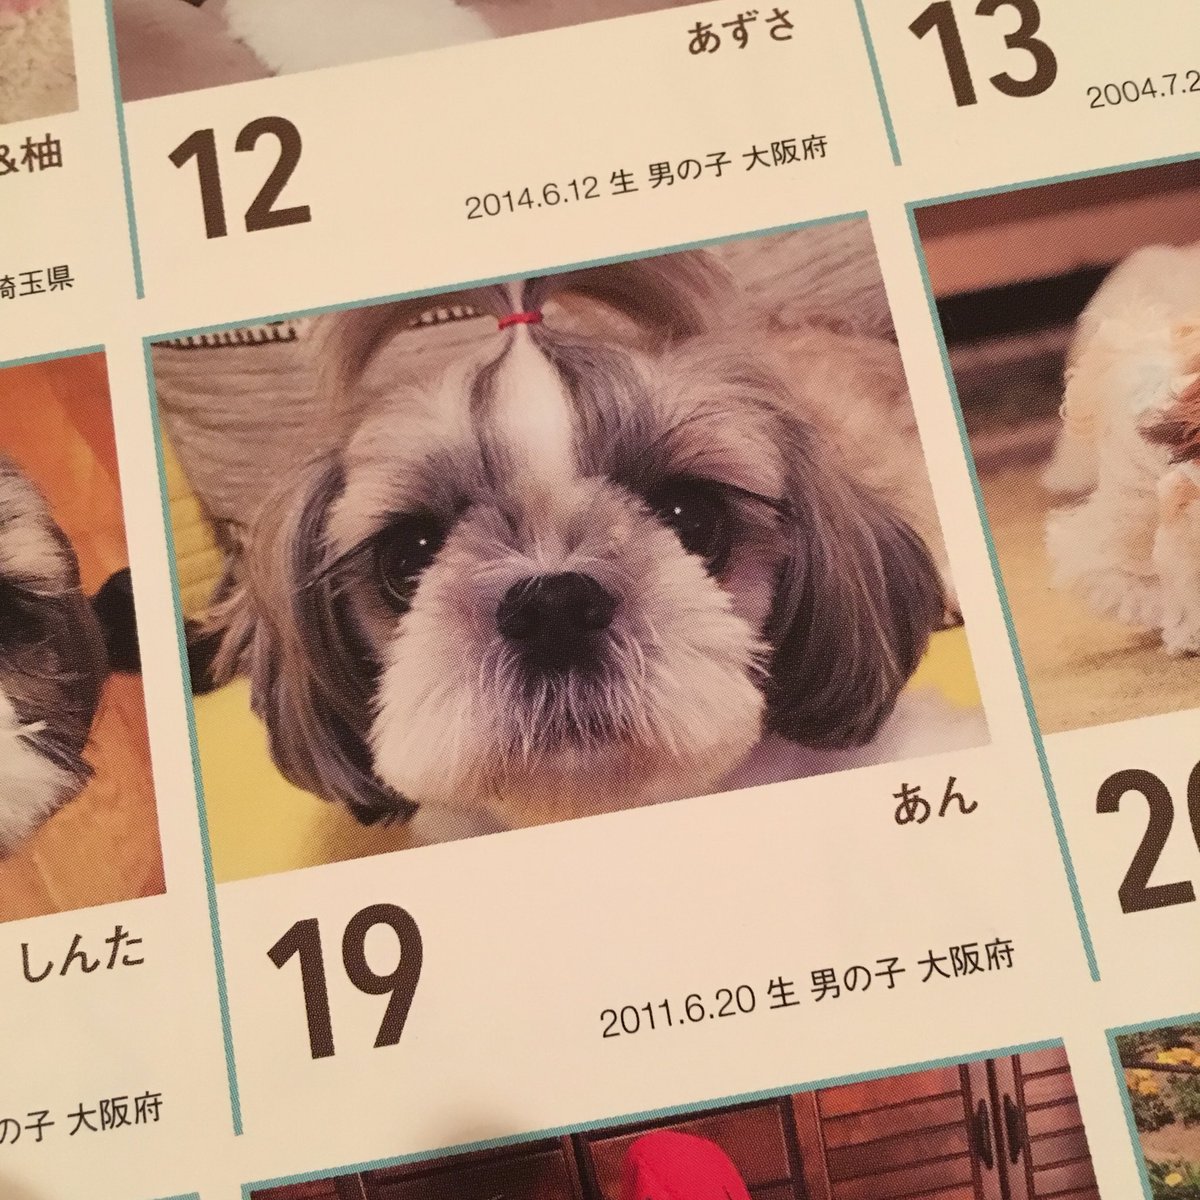 Aiko Official No Twitter 実家からシーズーカレンダーが届いた あんちゃん今年も最高やで あと インスタをいつも見ているシーズーが沢山載っててアゲ アイドルカレンダーくらい見てて幸せ